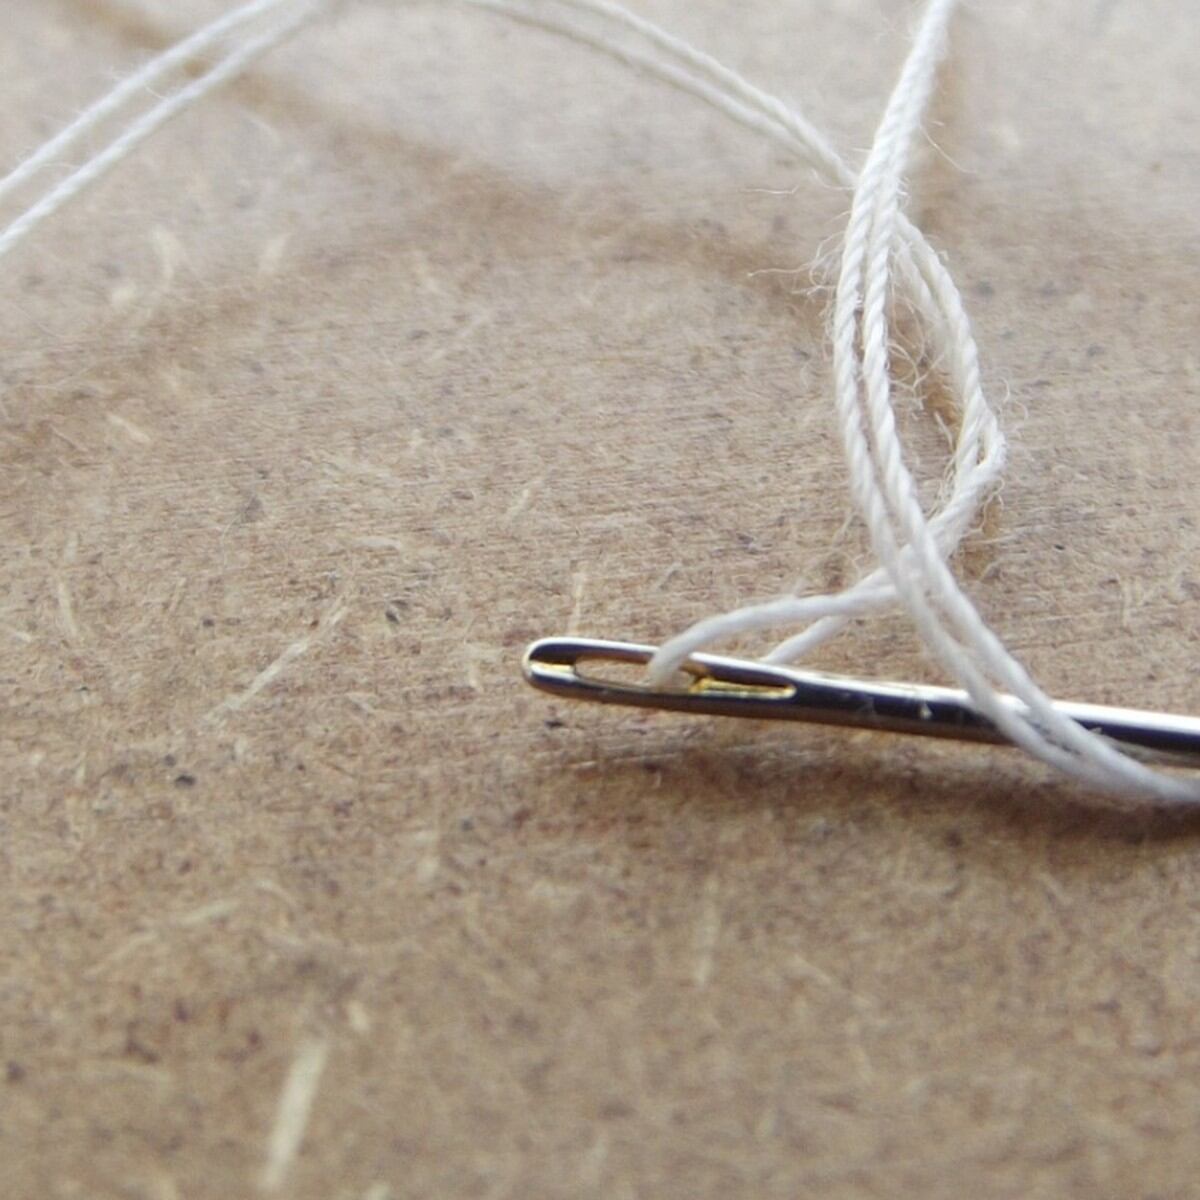 Cómo enhebrar agujas de coser a mano